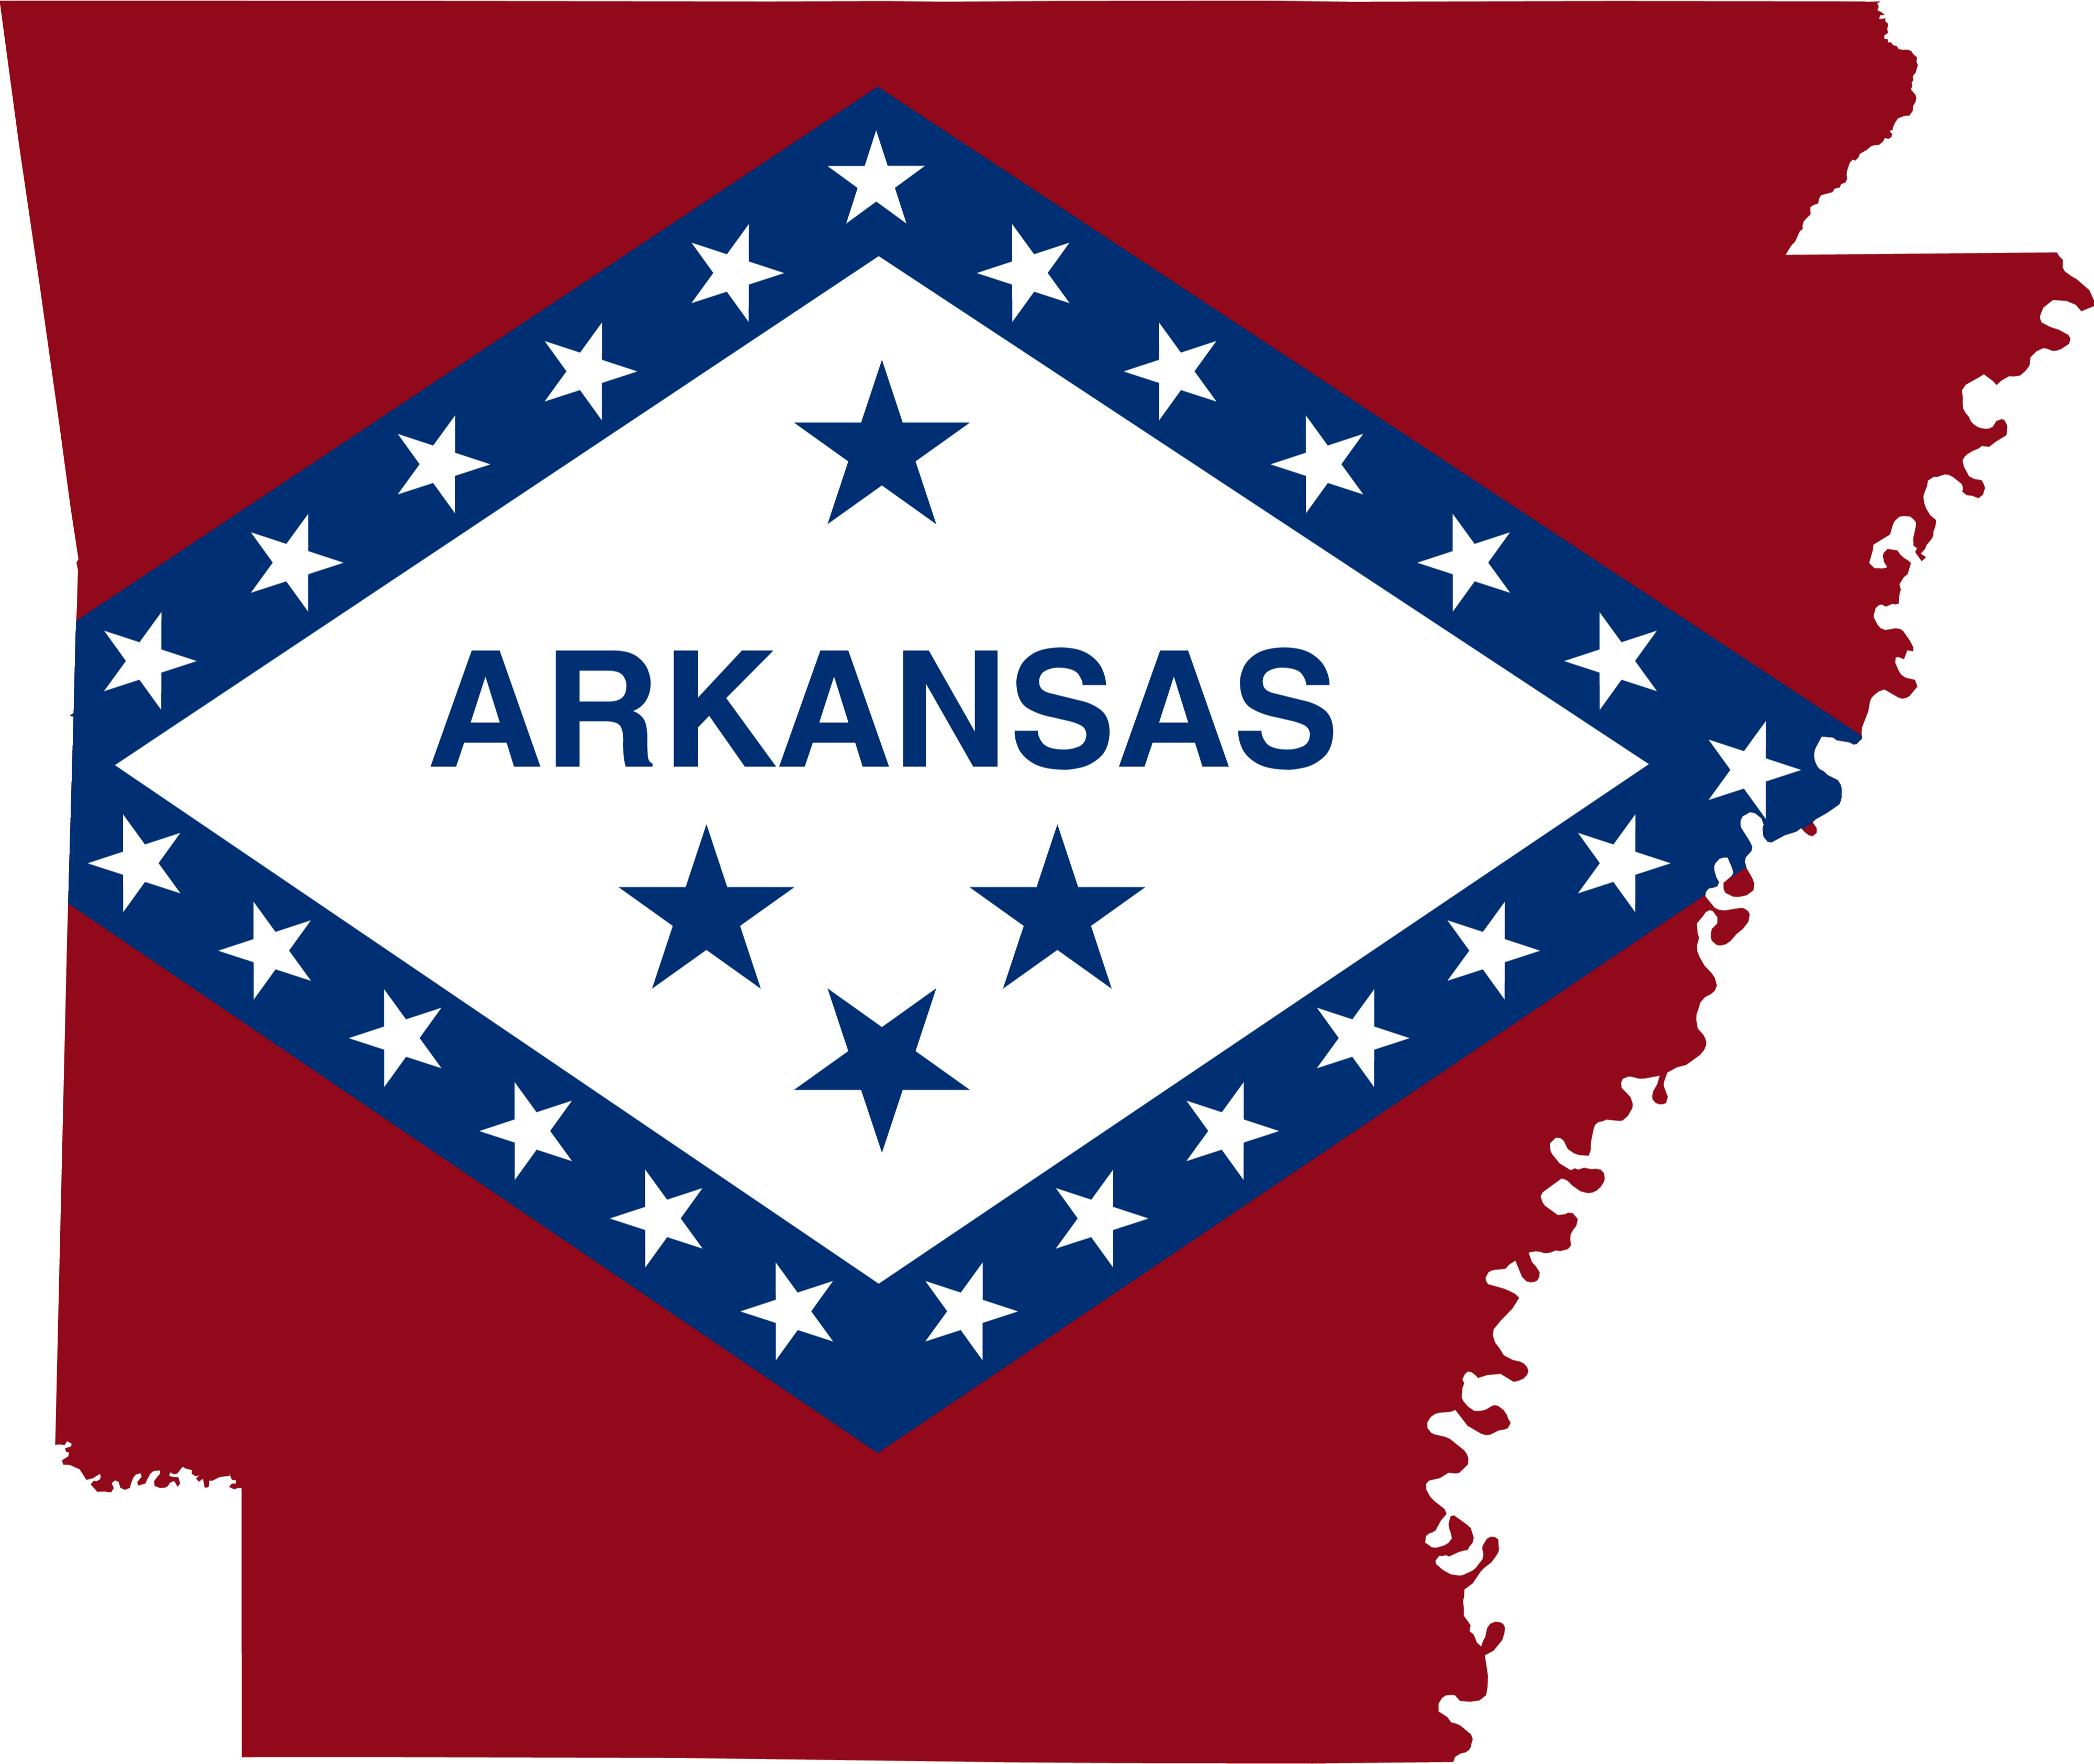 Arkansas Interior Design Continuing Education Requirements